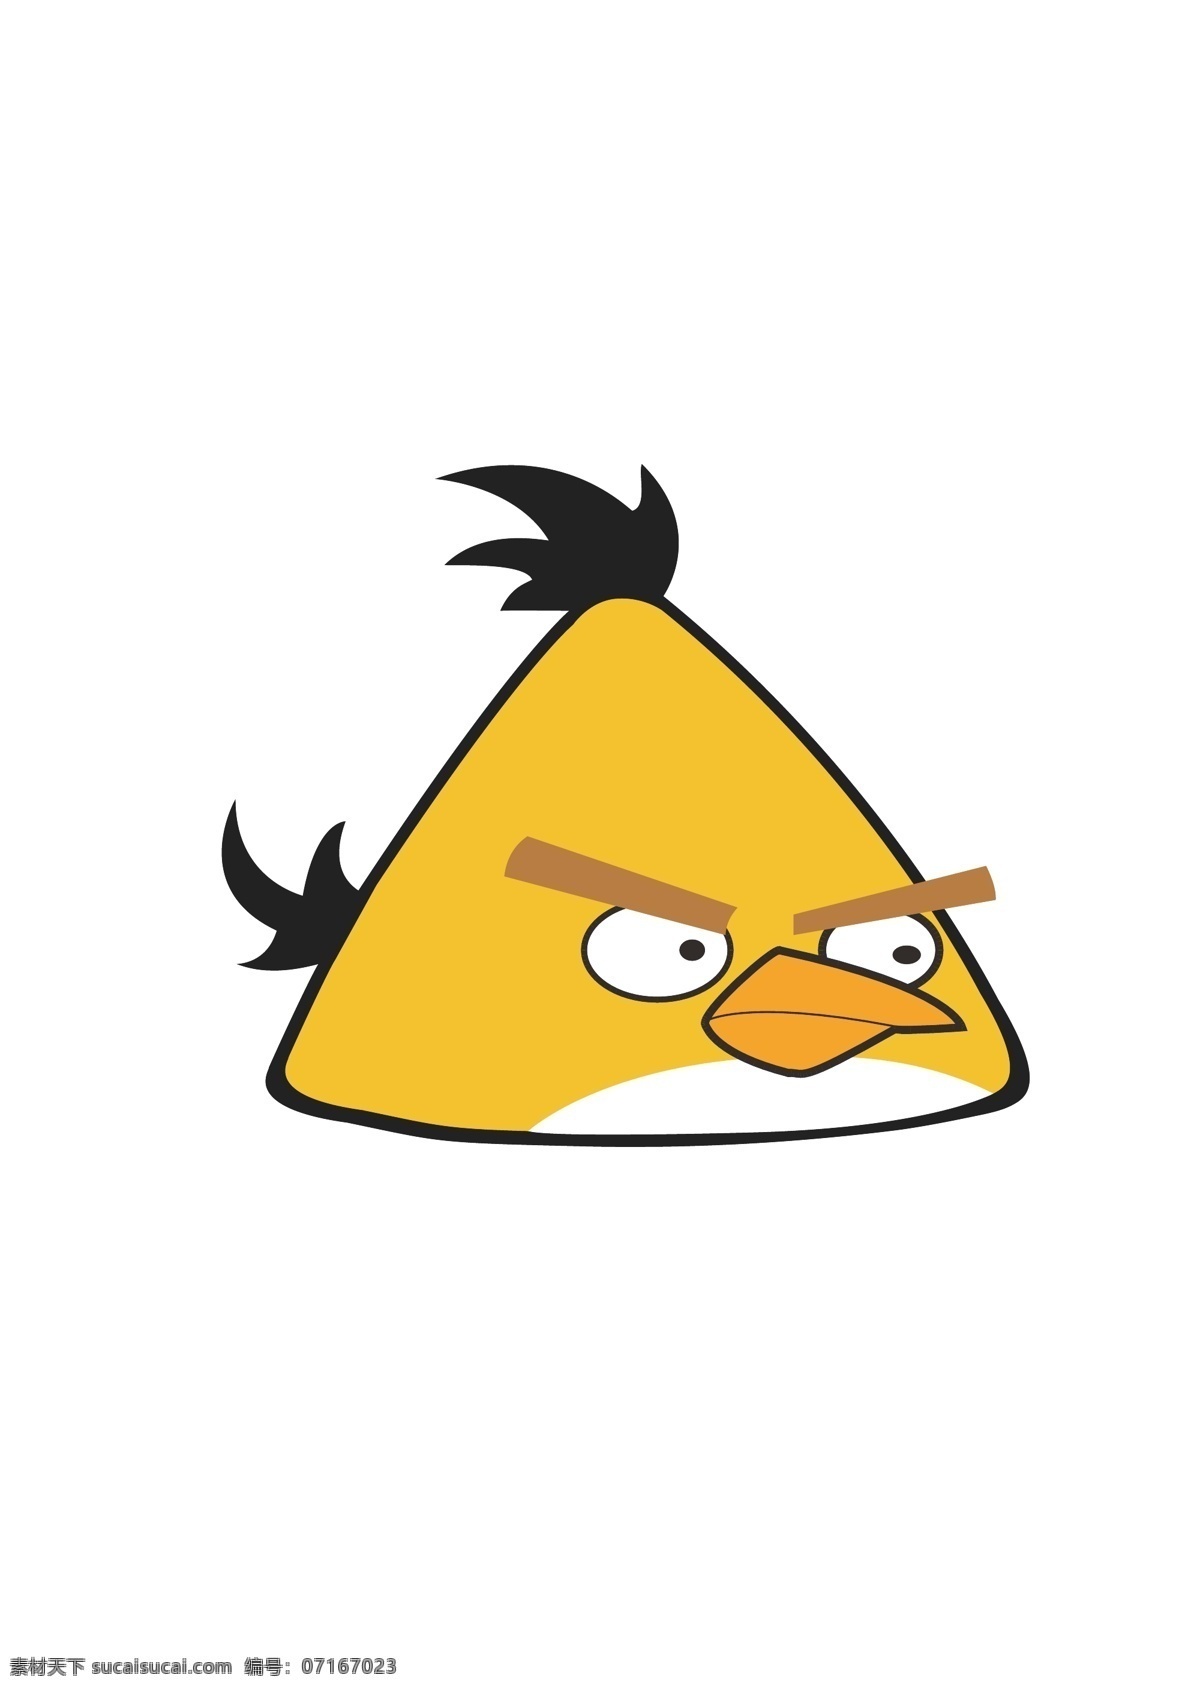 愤怒的小鸟 卡通 手绘 矢量 游戏人物 动漫动画 动漫人物